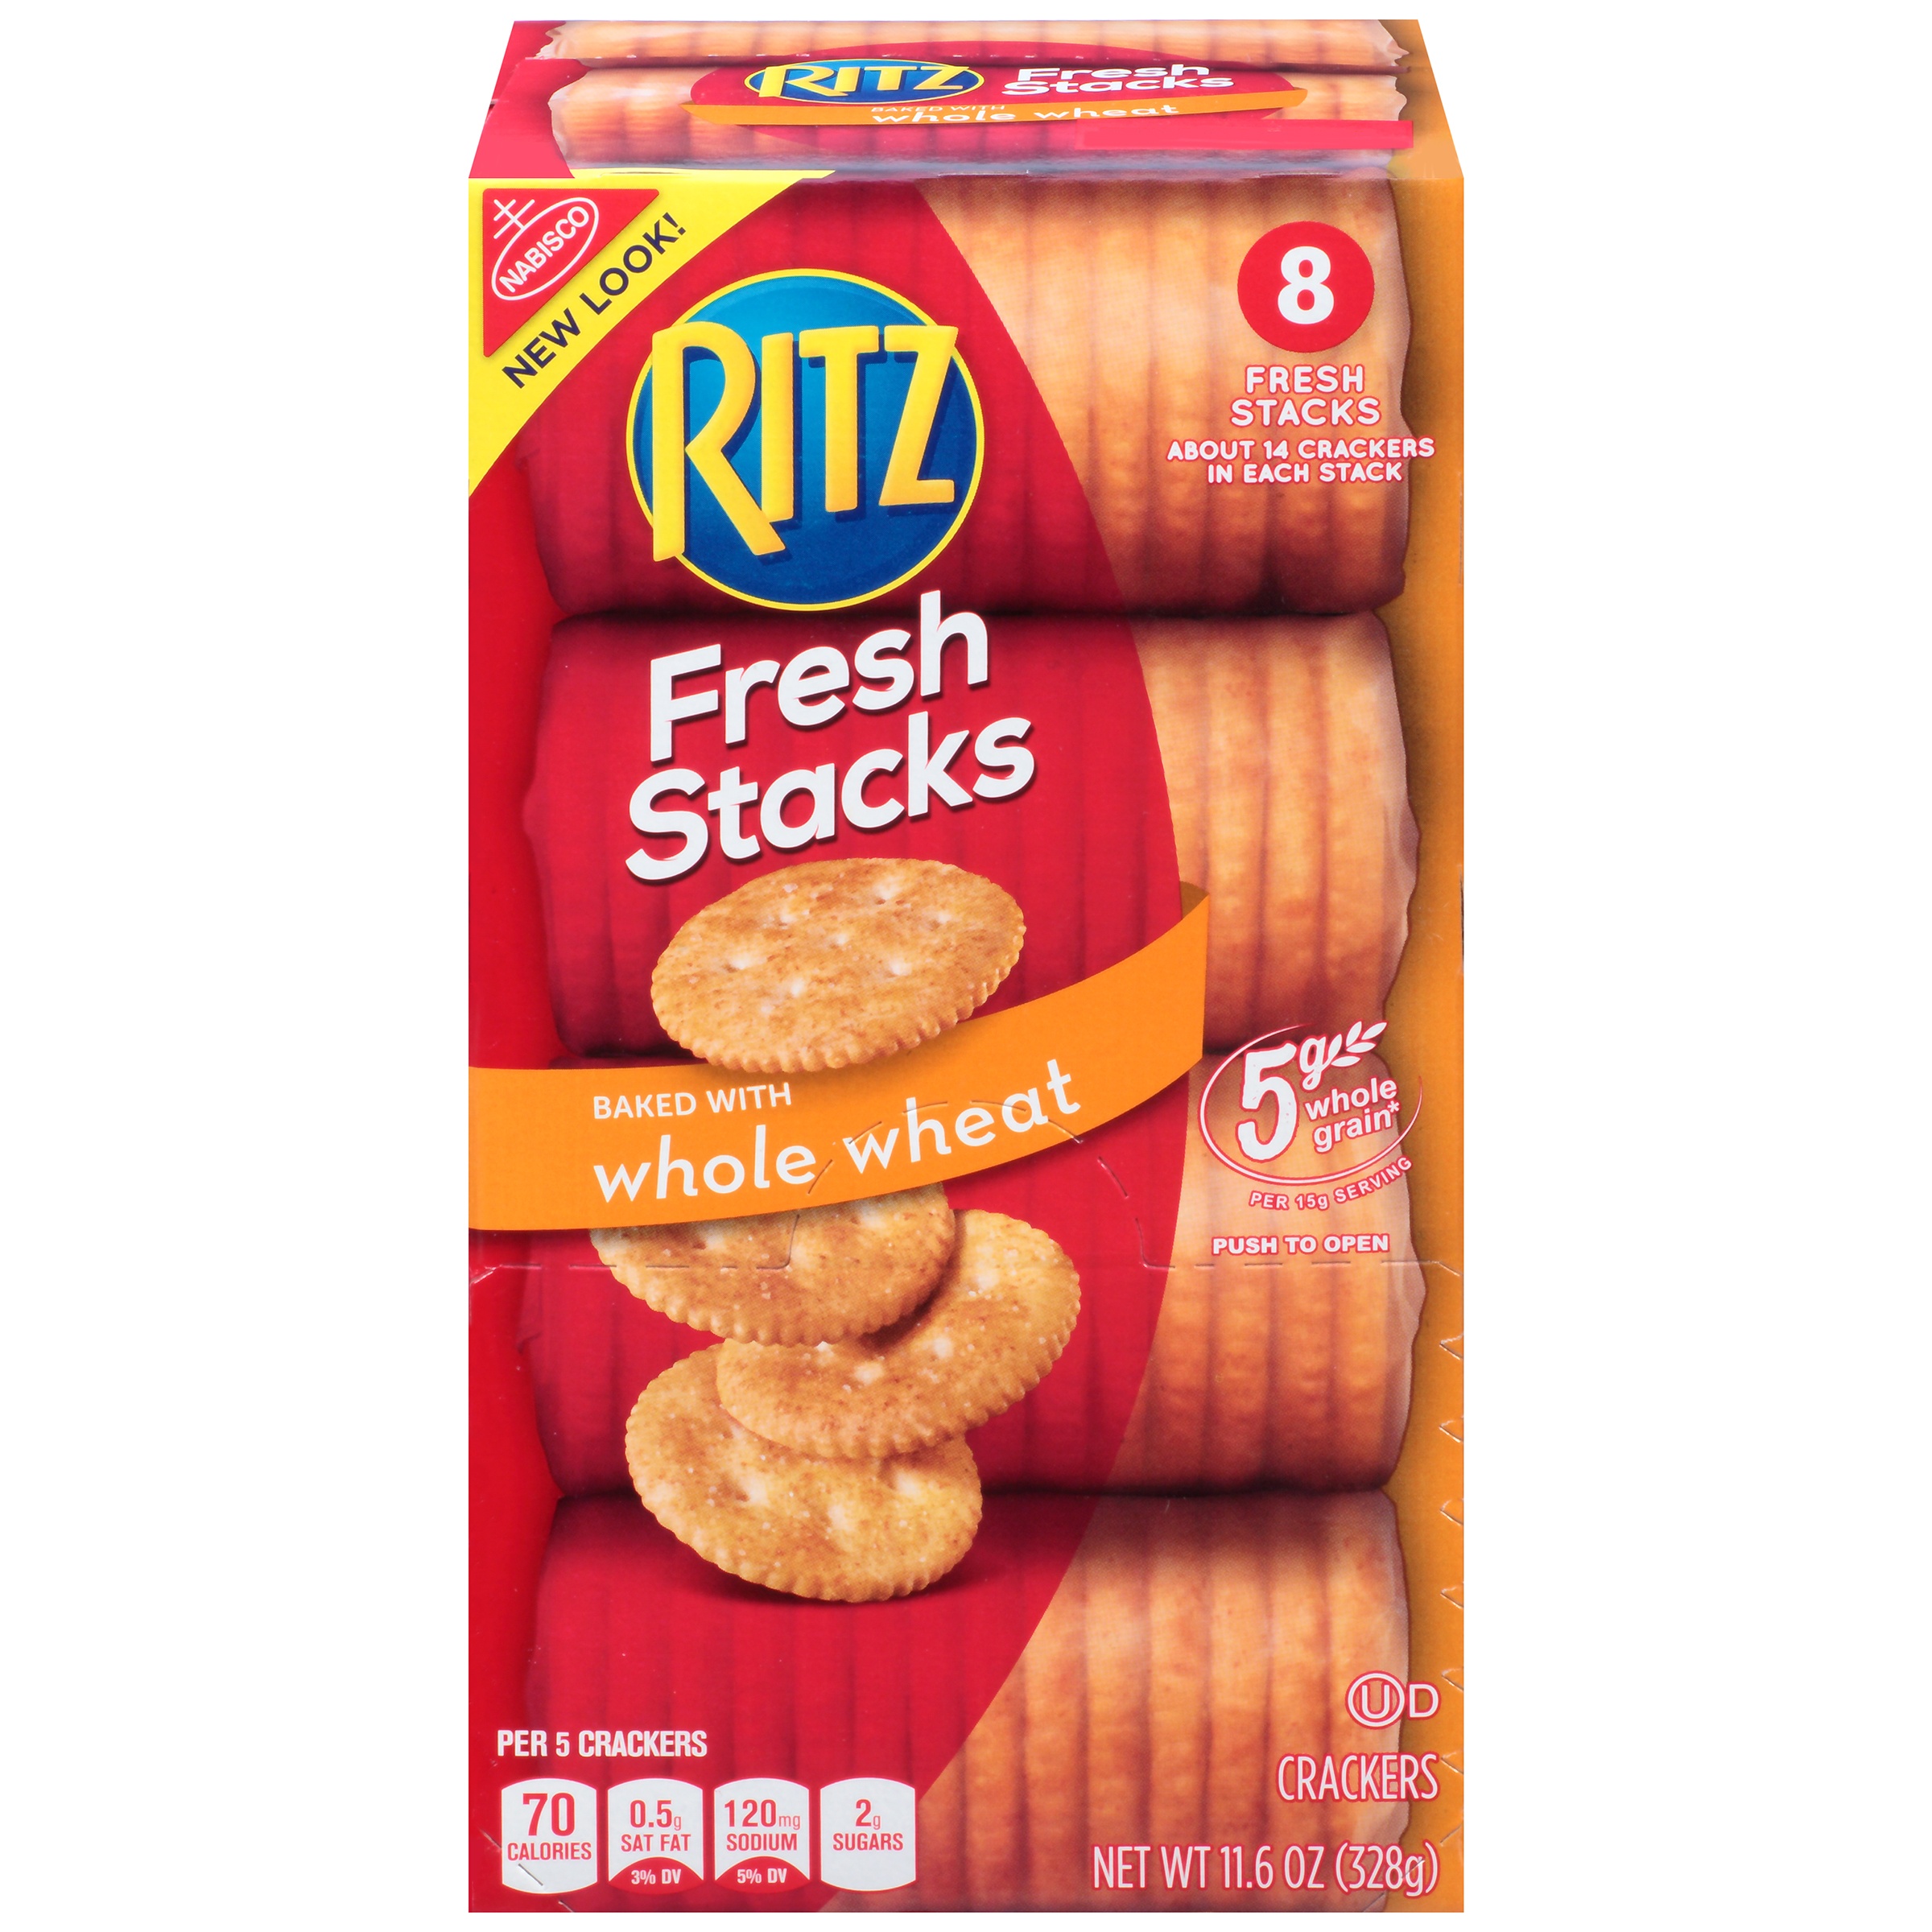 Most Ritz Crackers Eaten In 1 Minute